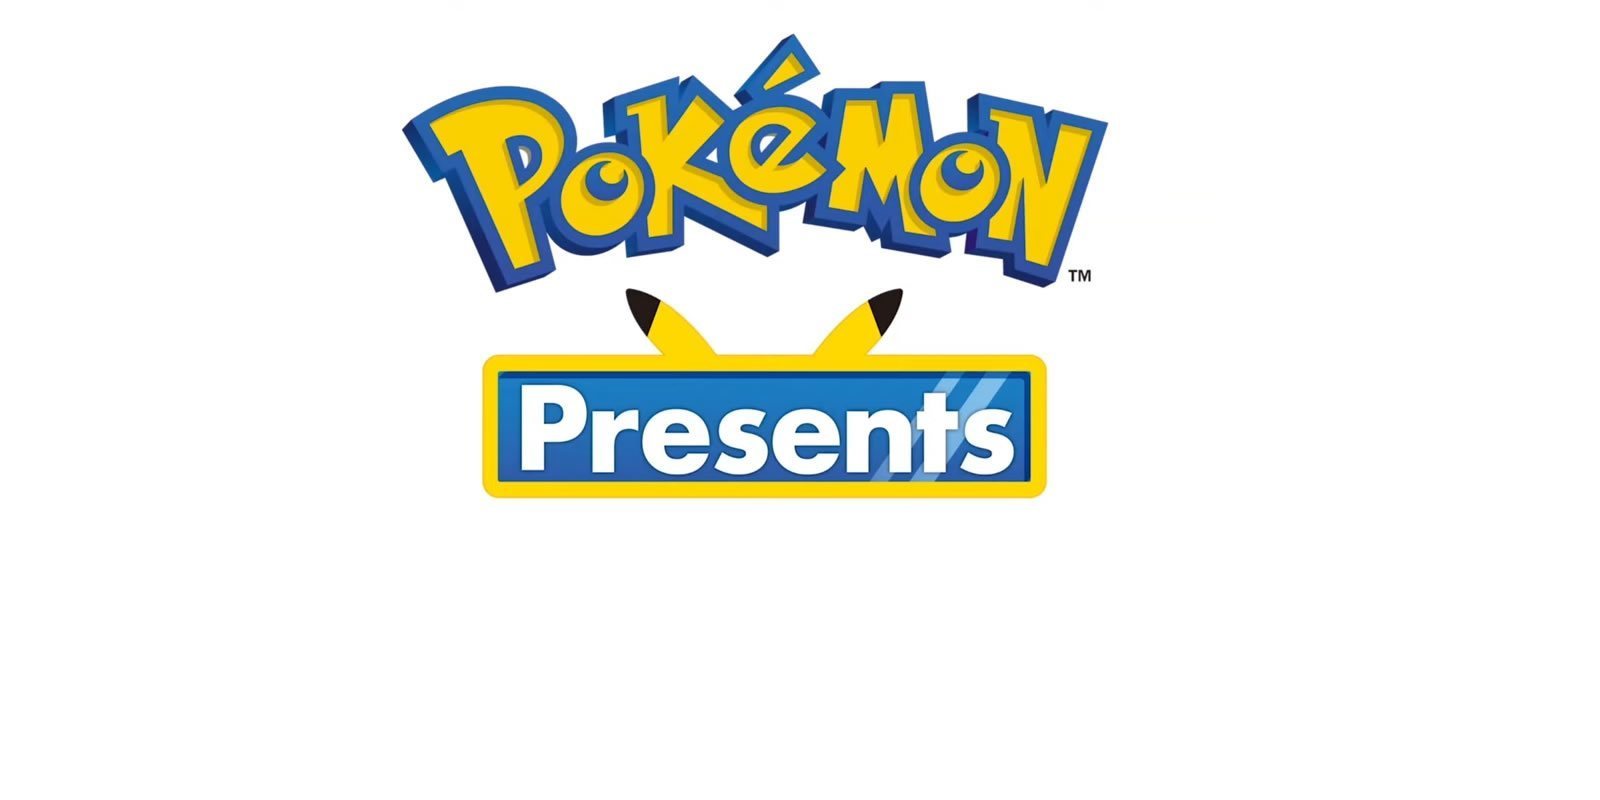 Se anuncian nuevos juegos de 'Pokémon' y un nuevo Pokémon Presents para la semana que viene